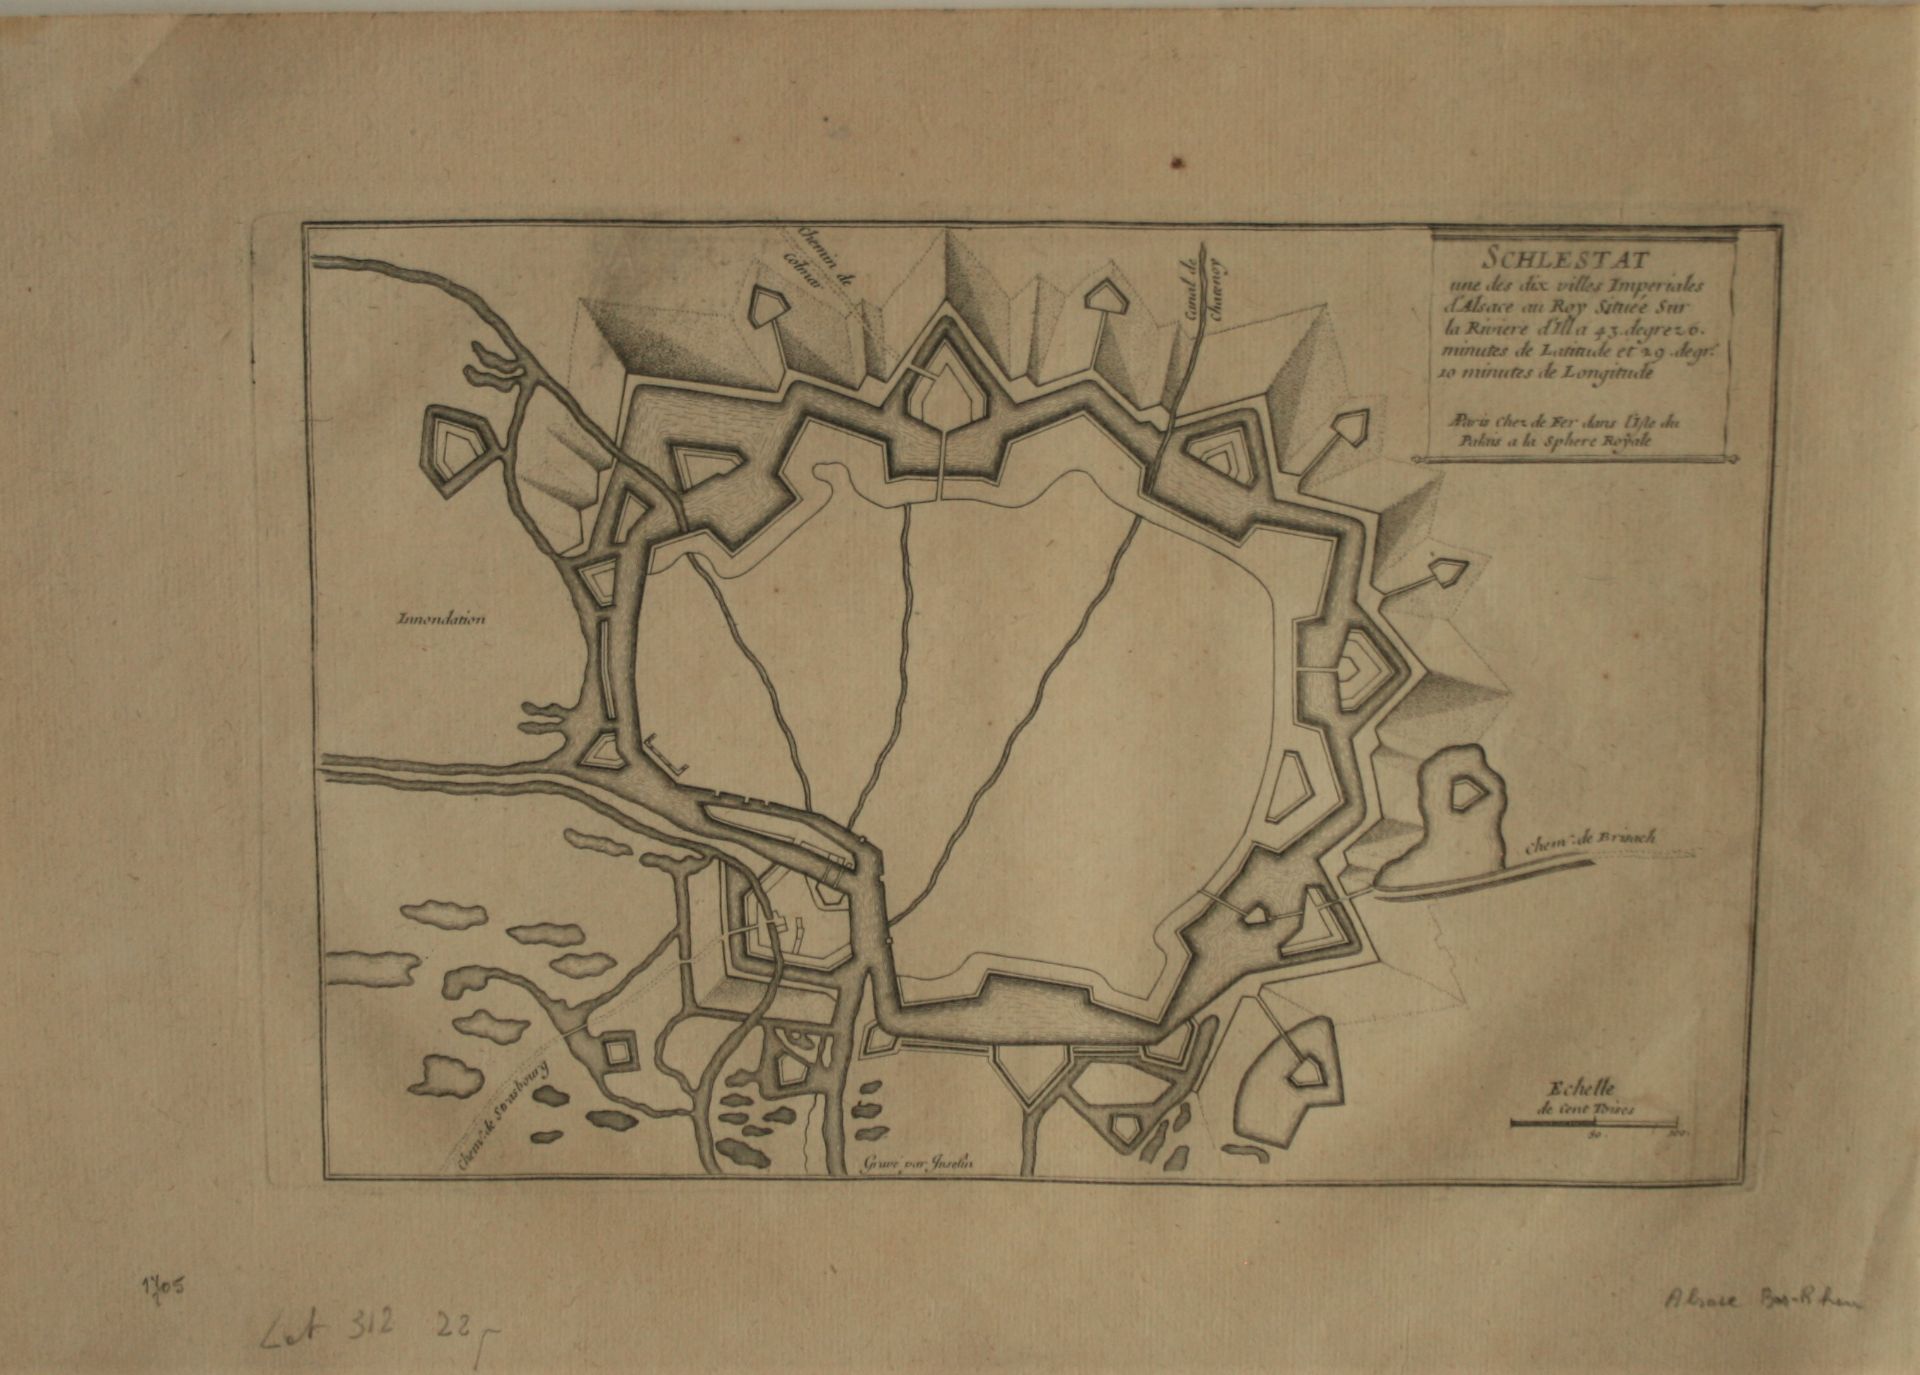 Plan de la place forte de SCHLESTAT (Sélestat) par Nicolas de FER, 1705 - Dimensions [...]